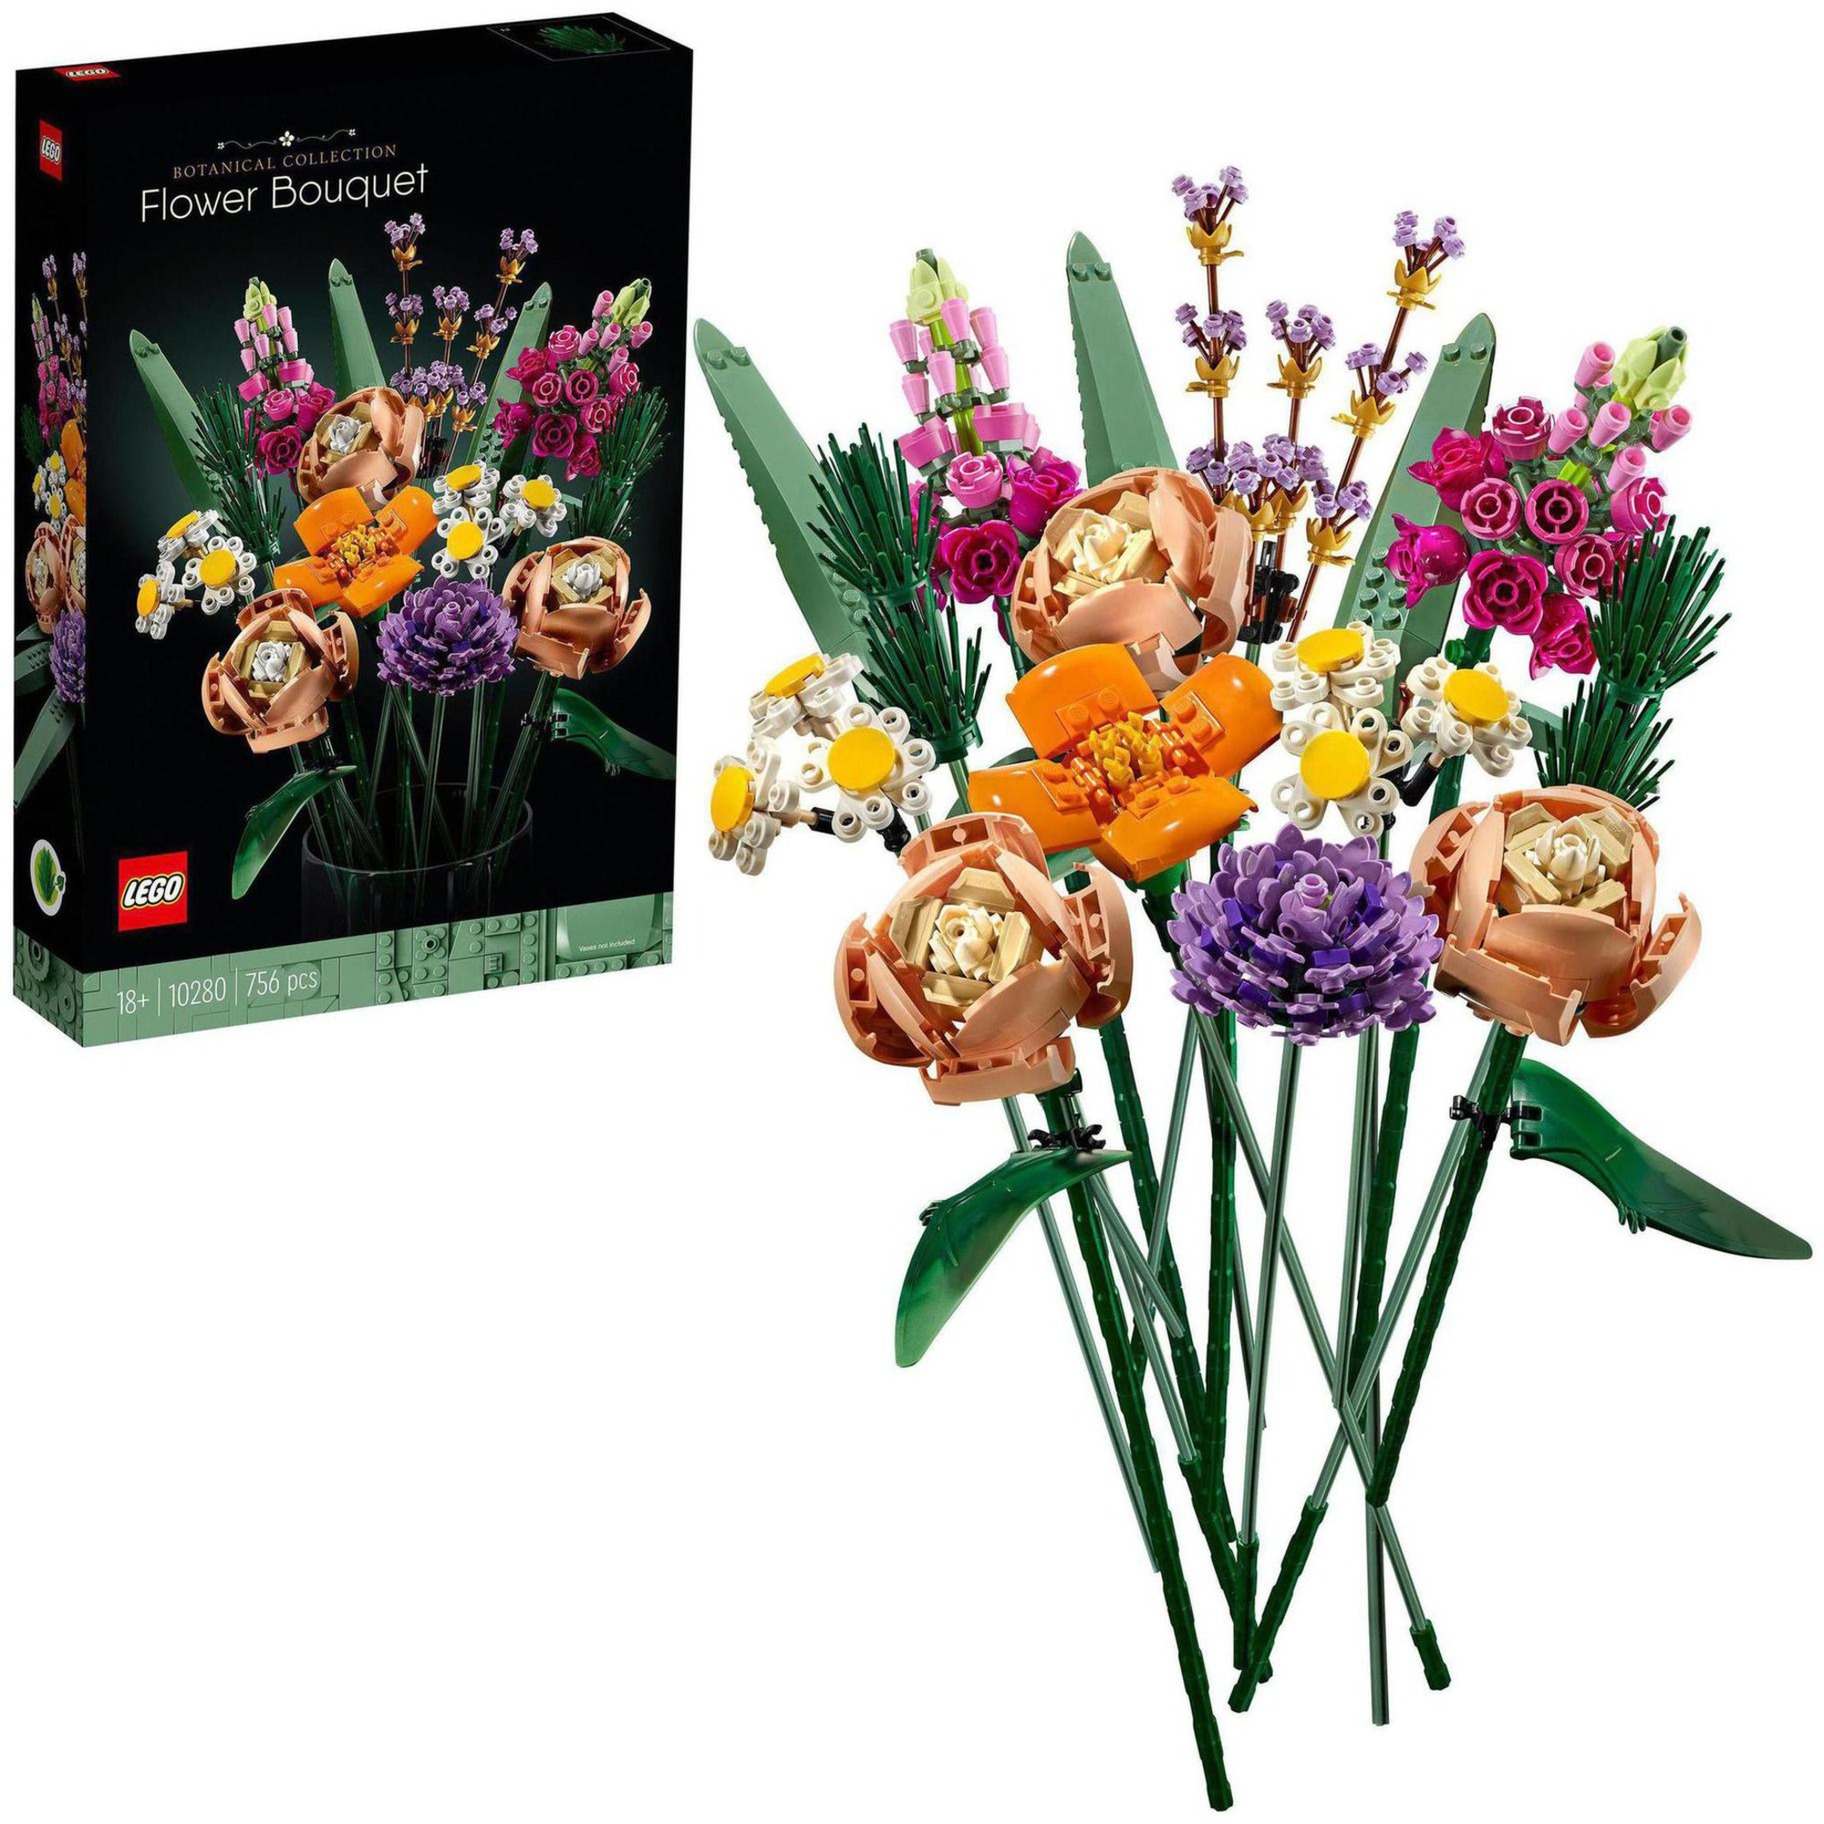 Image of Alternate - 10280 Creator Expert Blumenstrauß, Konstruktionsspielzeug online einkaufen bei Alternate